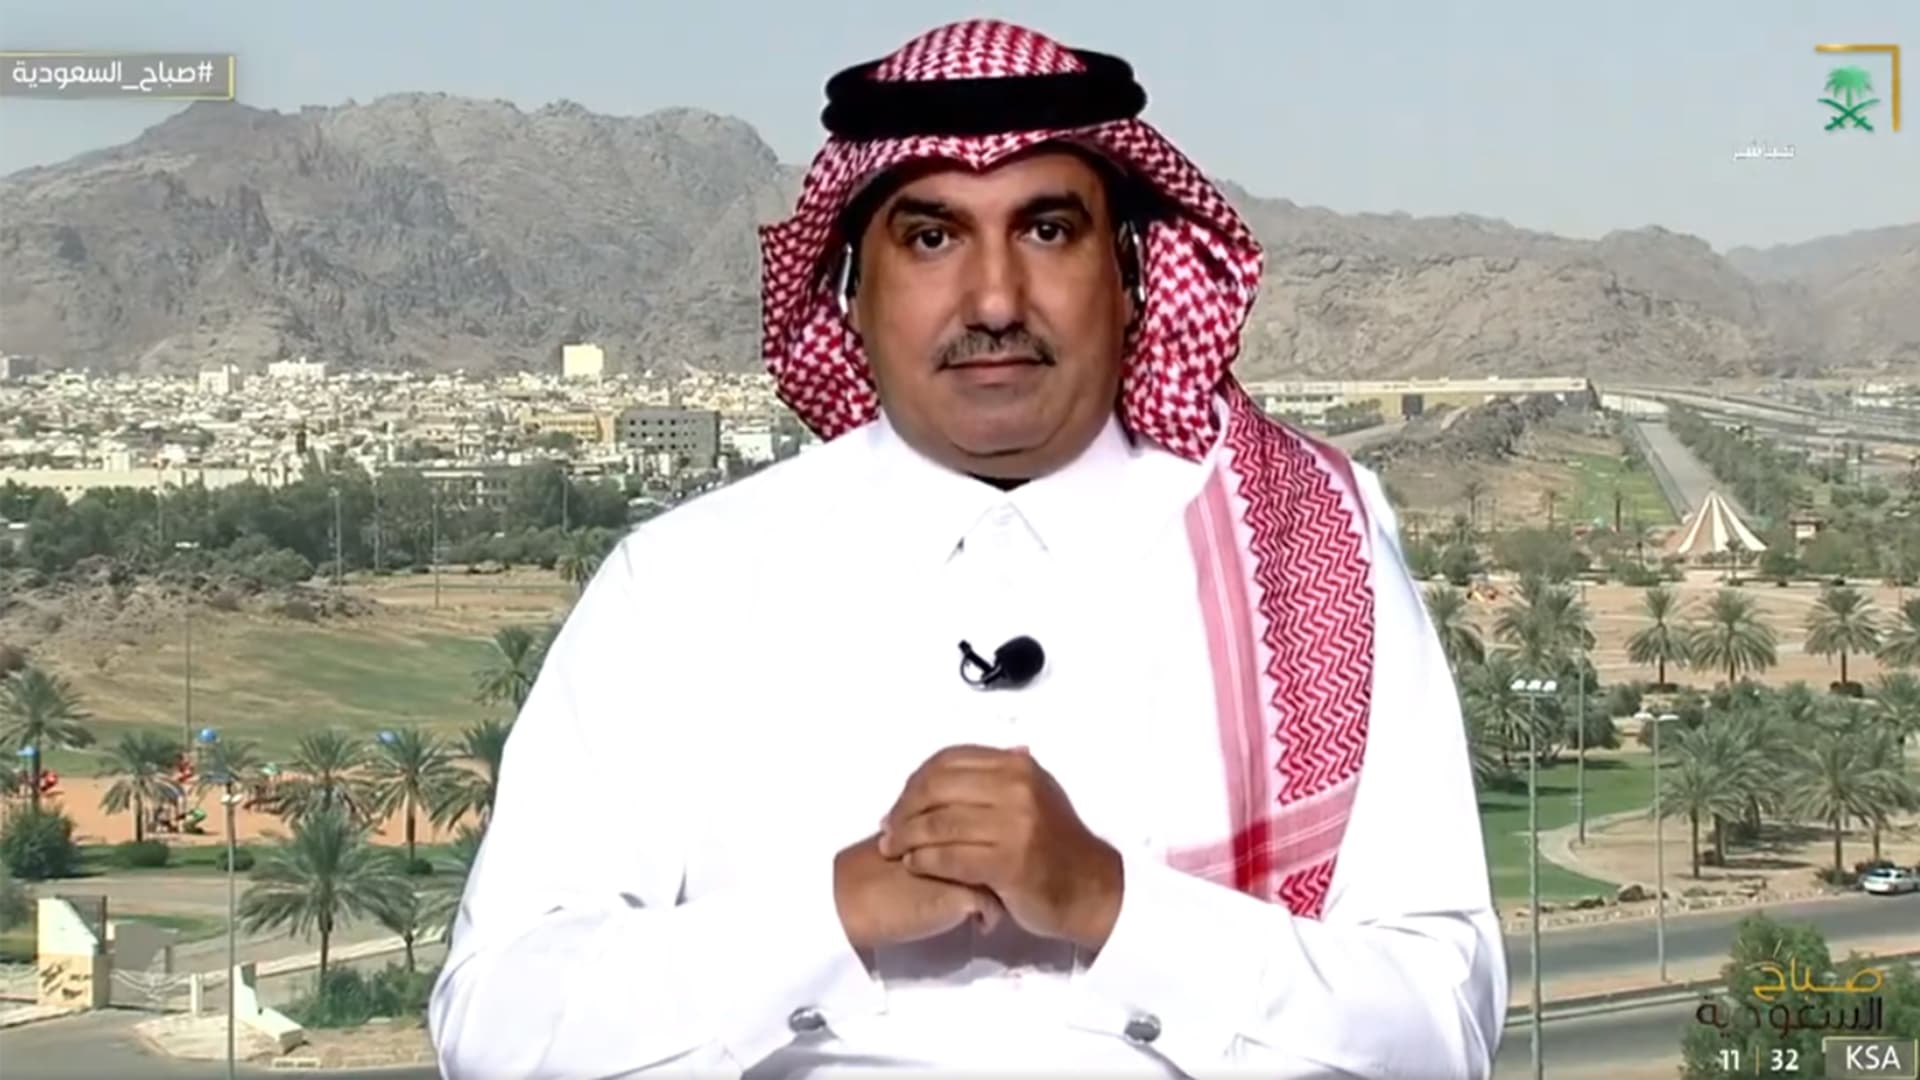 "الزوجة الثانية مصدر سعادة للأولى".. مستشار أسري سعودي يوضح تصريحاته بعدما أثارت جدلا